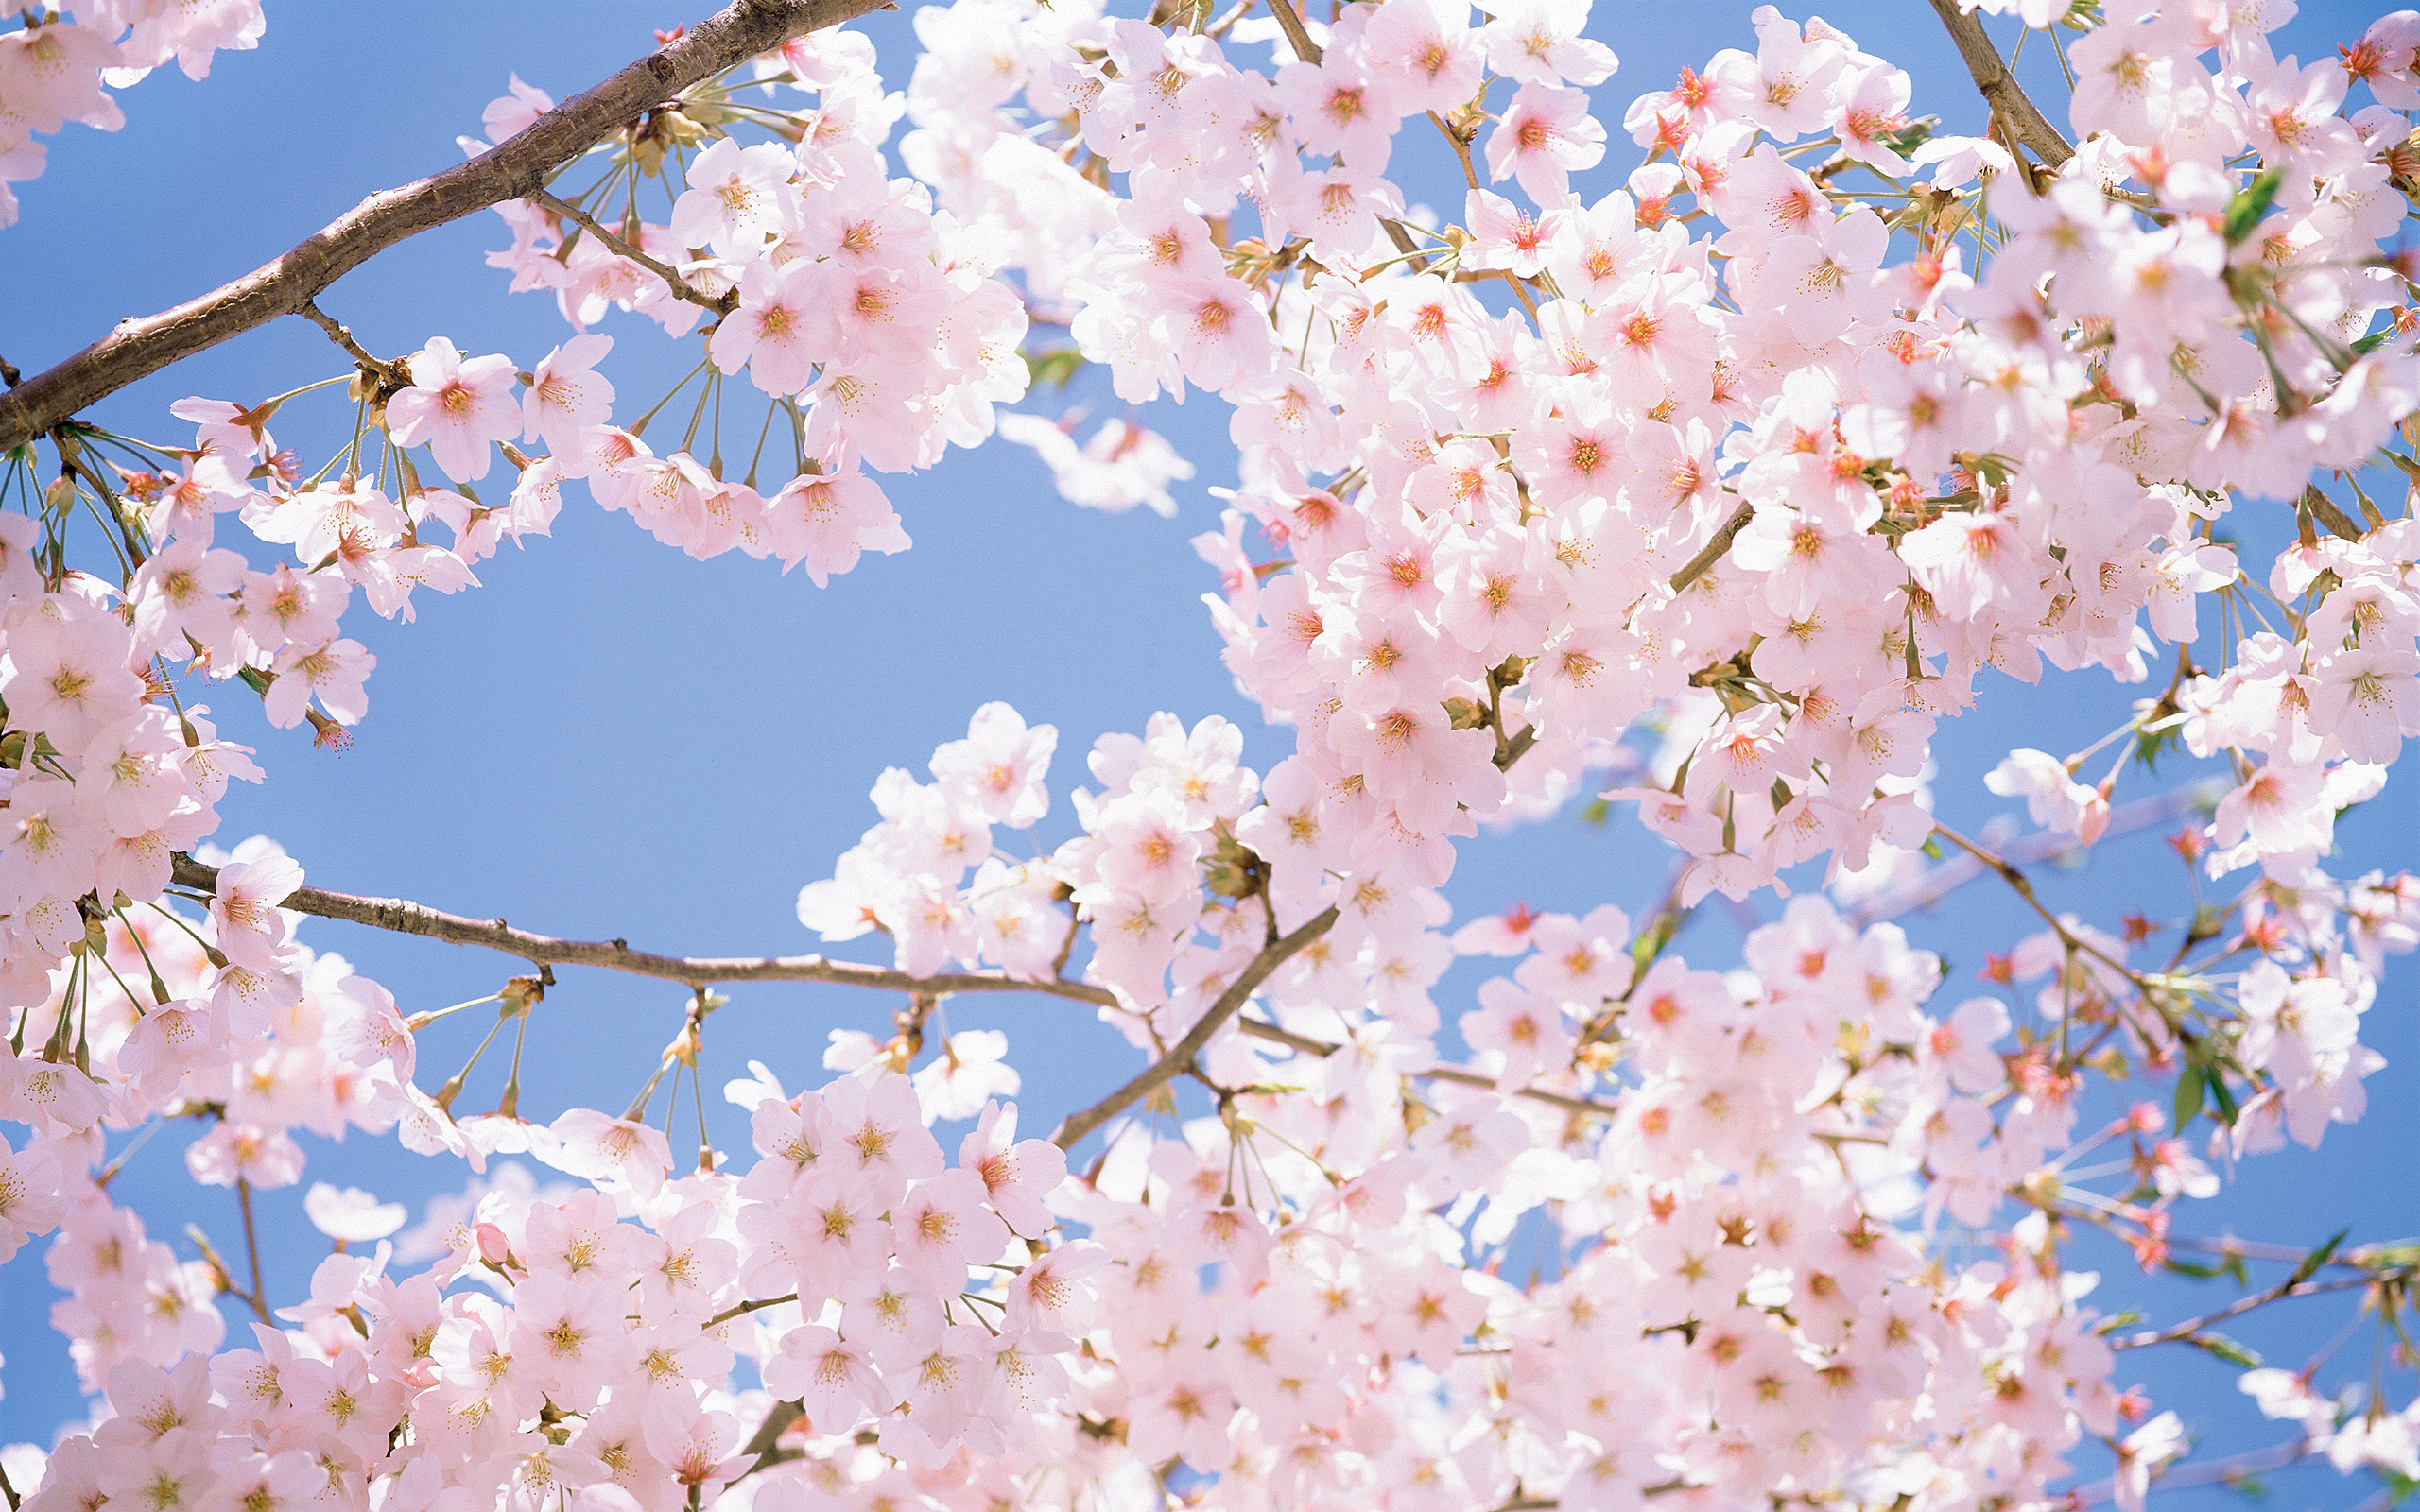 Du lịch Nhật Bản khám phá ý nghĩa của hoa anh đào